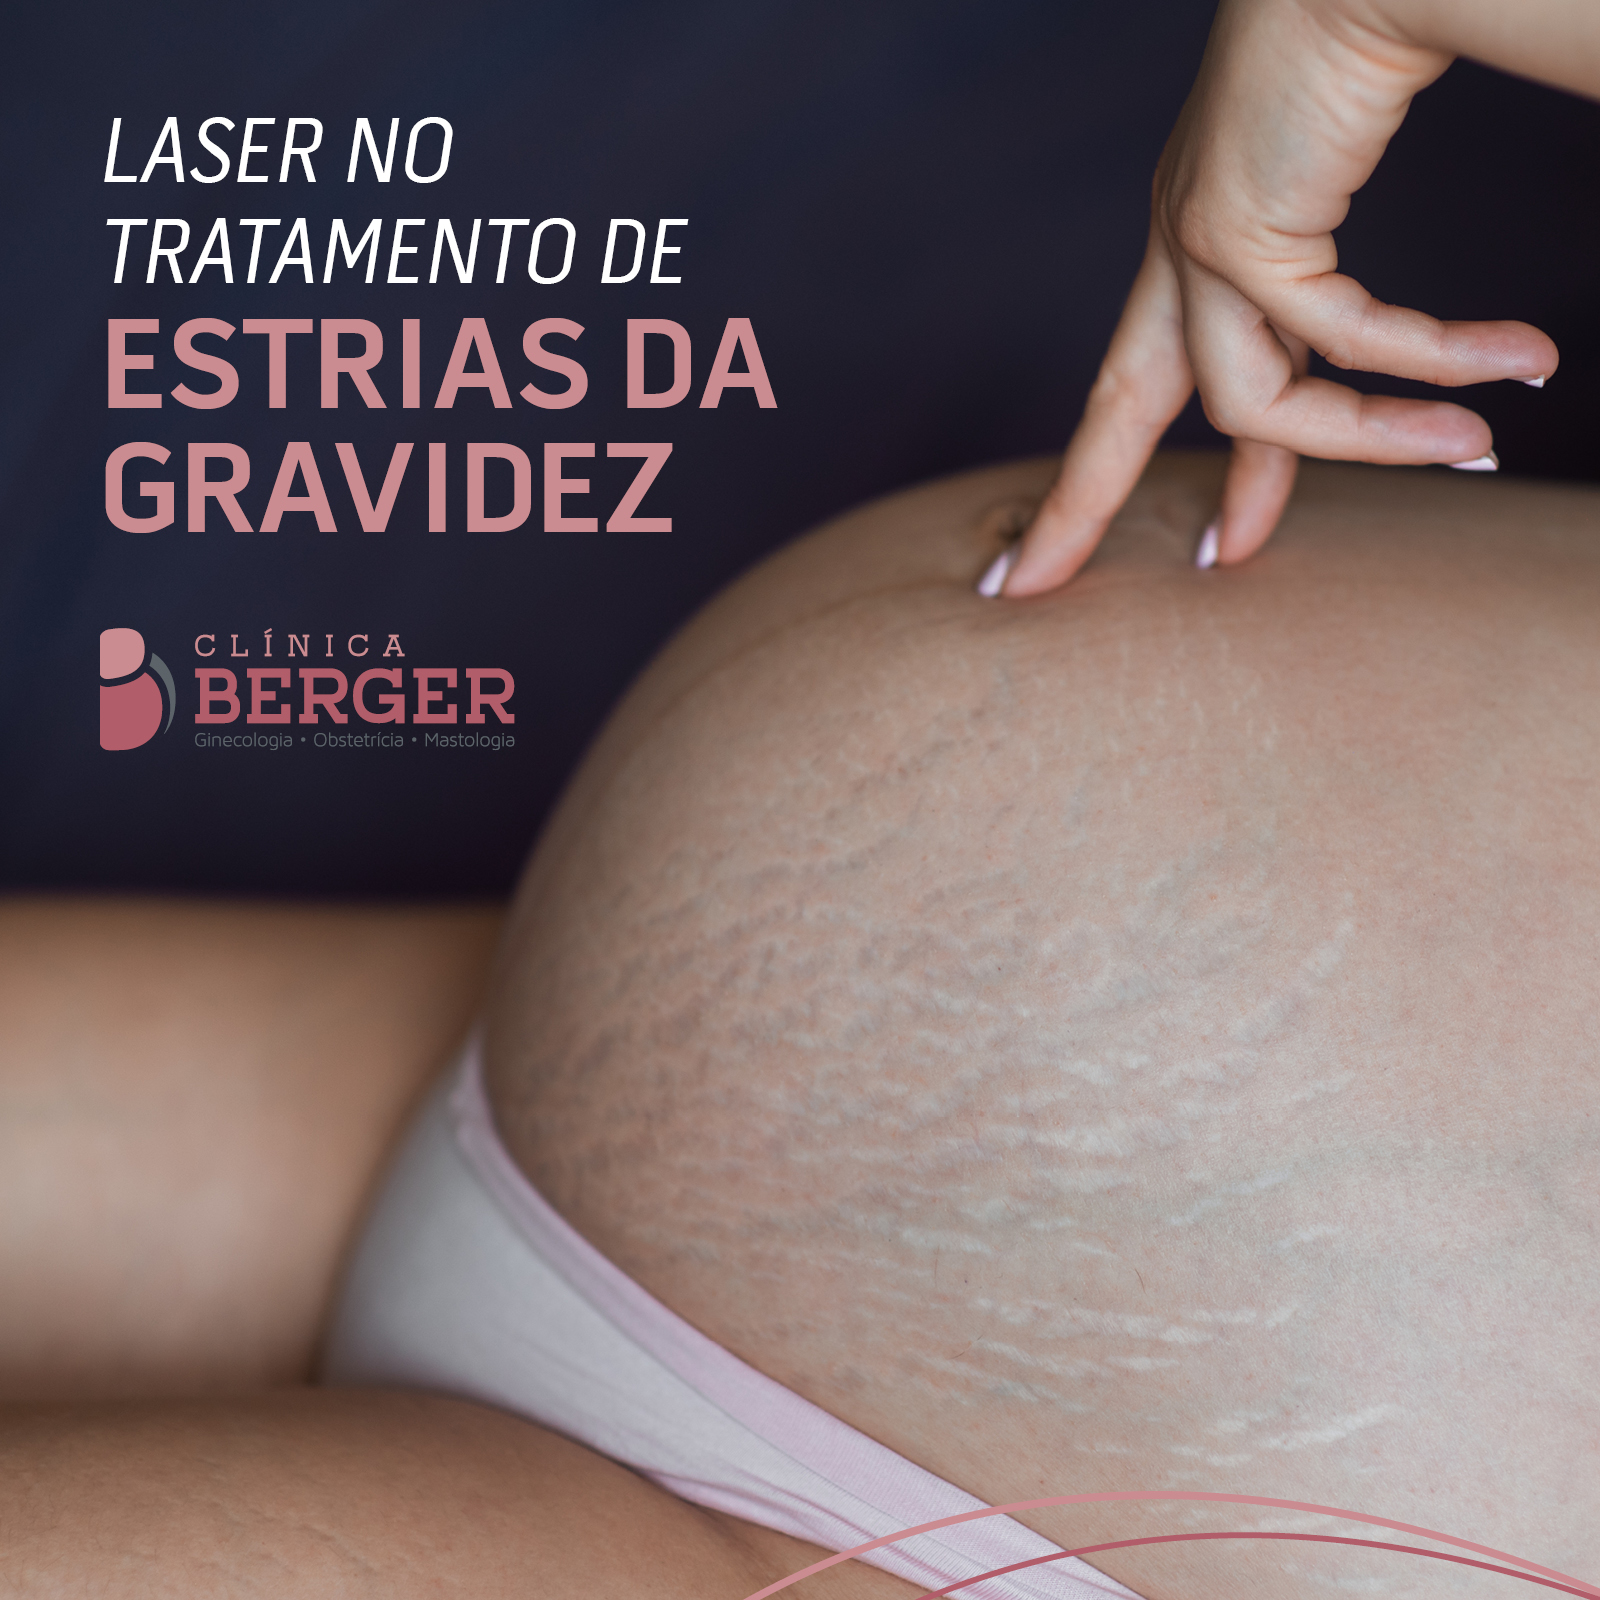 Laser no tratamento de estrias da gravidez